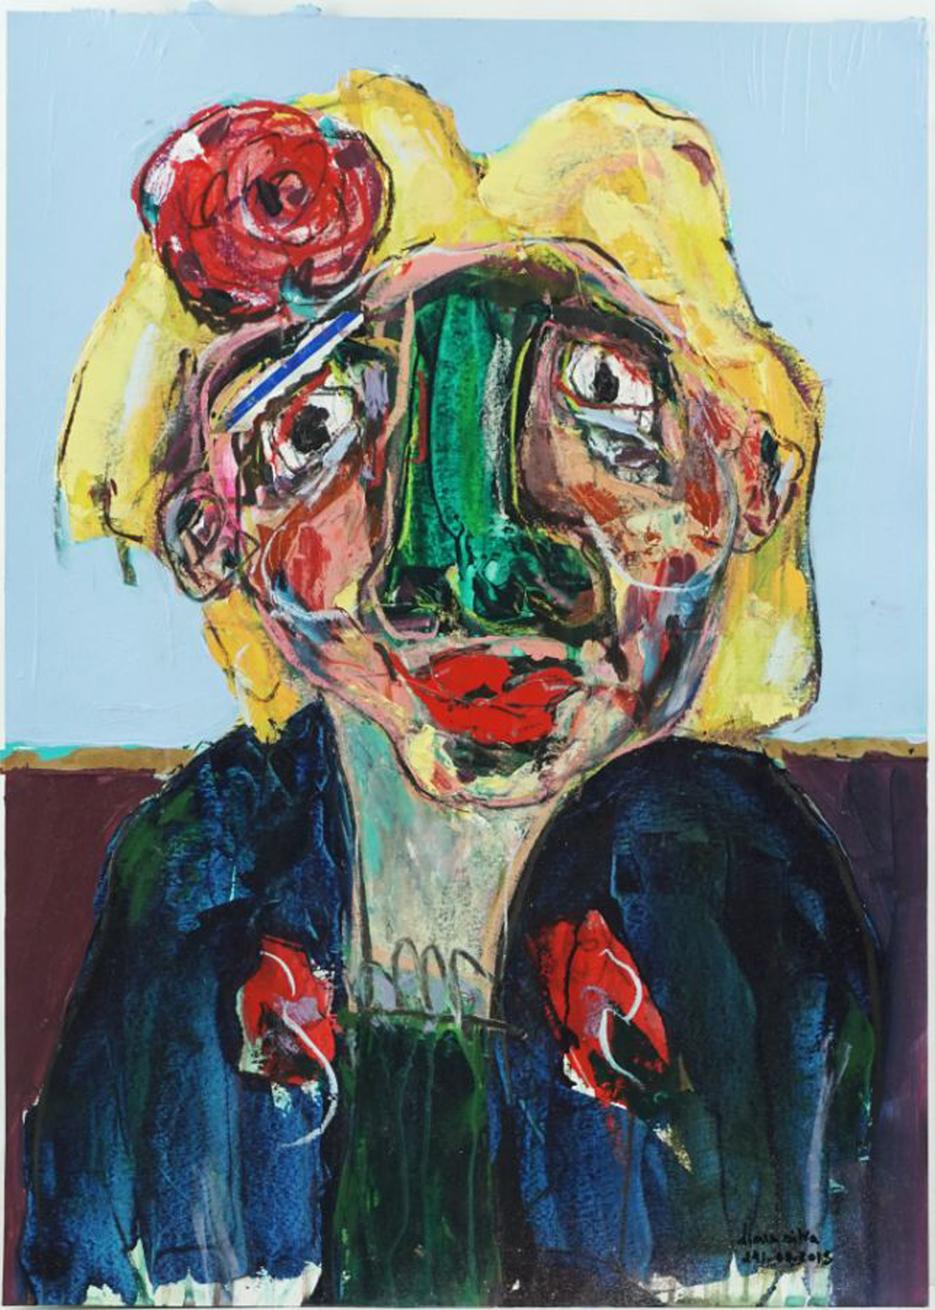 Abstract Painting D. Silva - Art contemporain, Composition expressionniste figurative sur papier, technique mixte, 2018